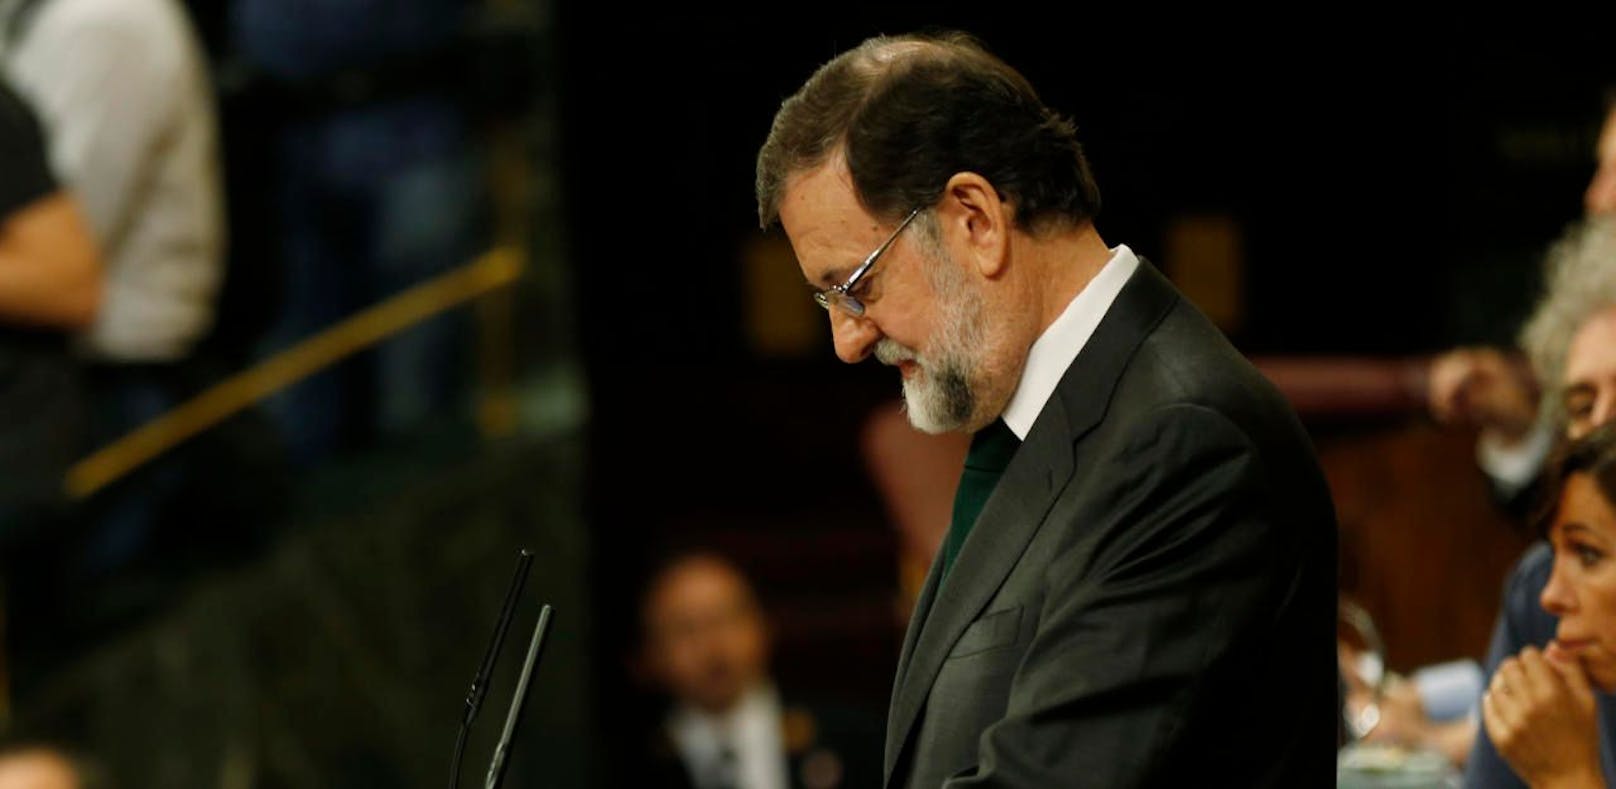 Mariano Rajoy bei seiner Rede im spanischen Parlament.